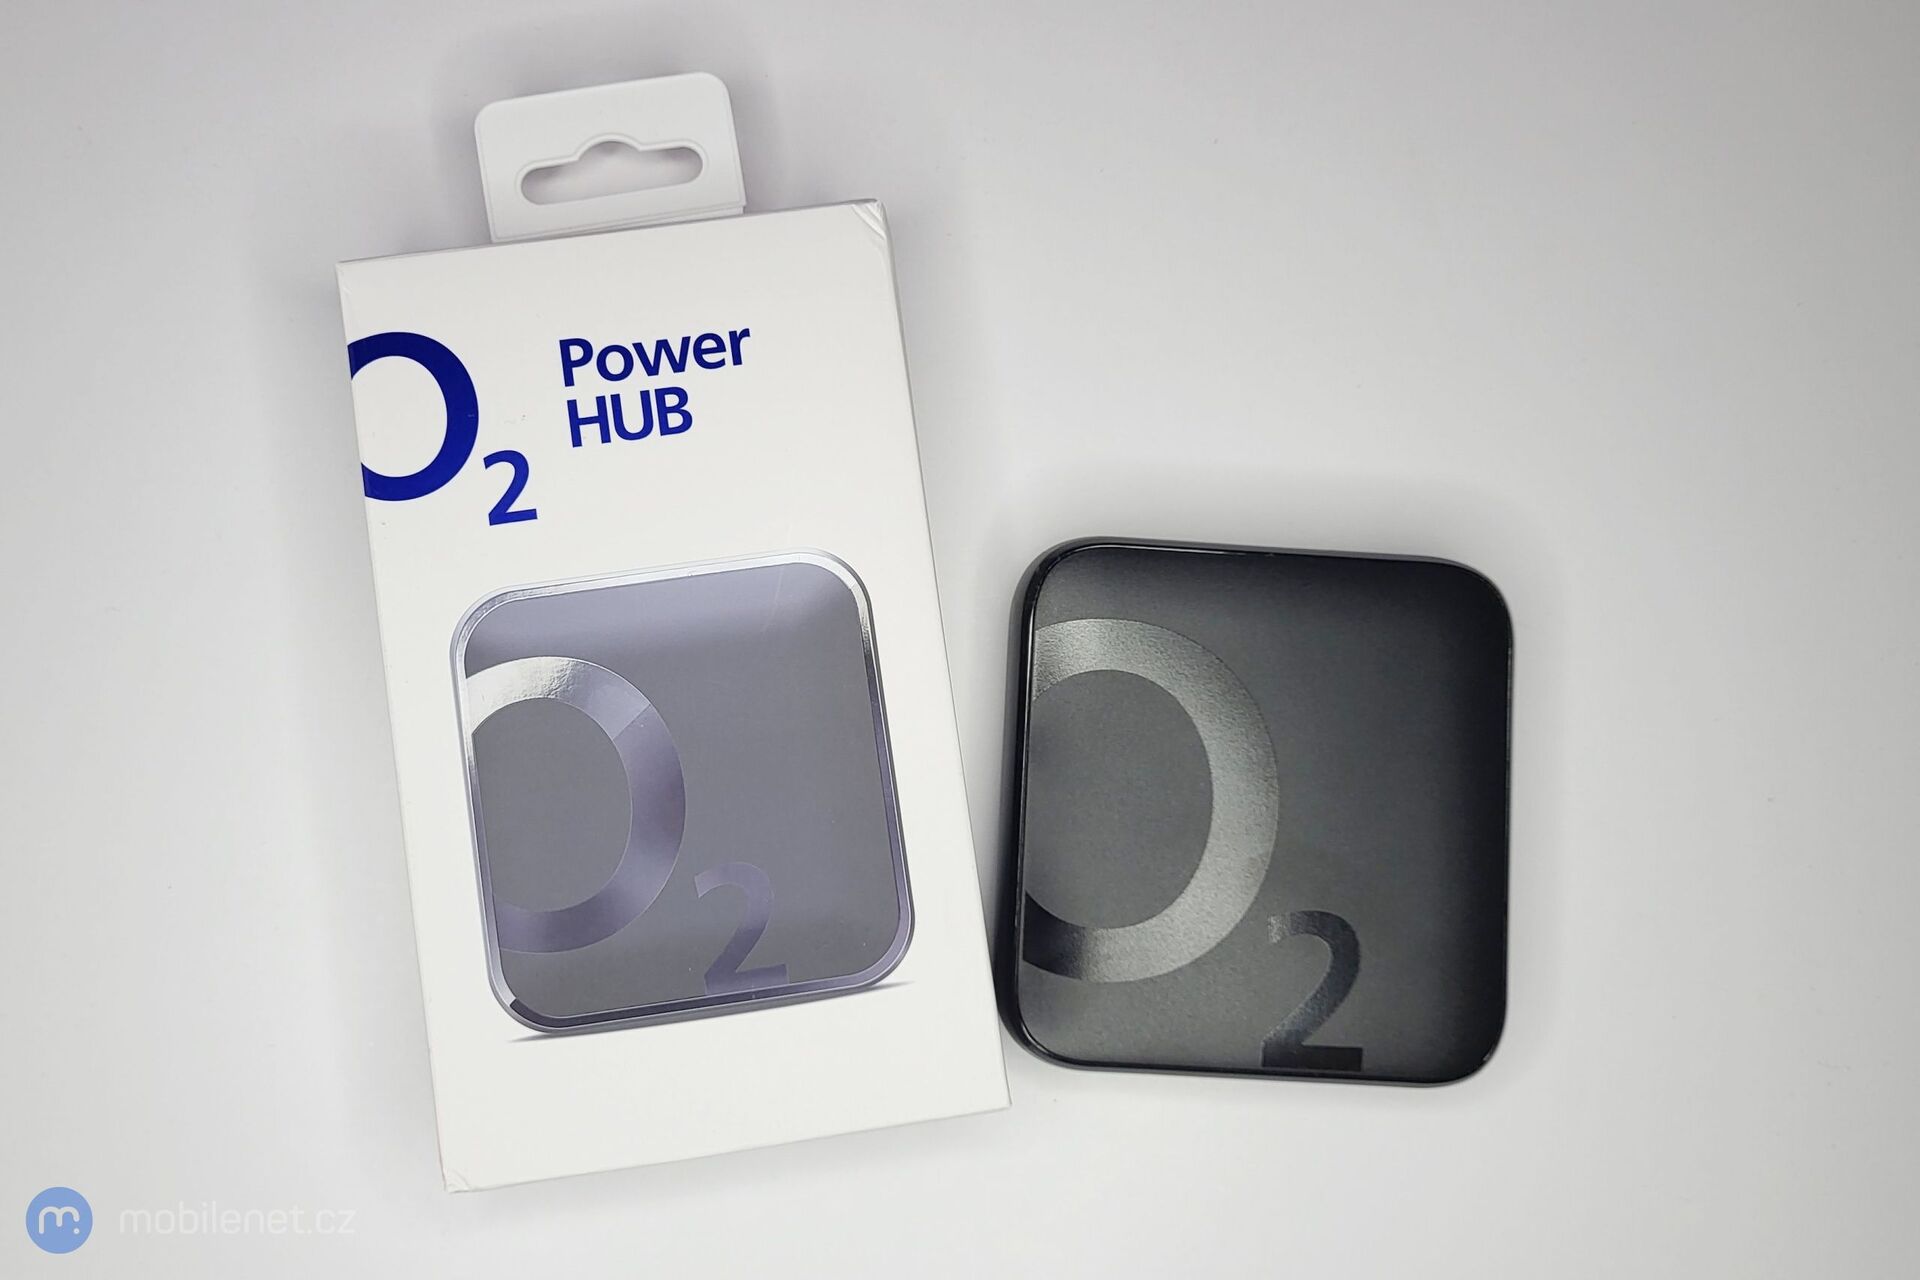 O2 Power HUB